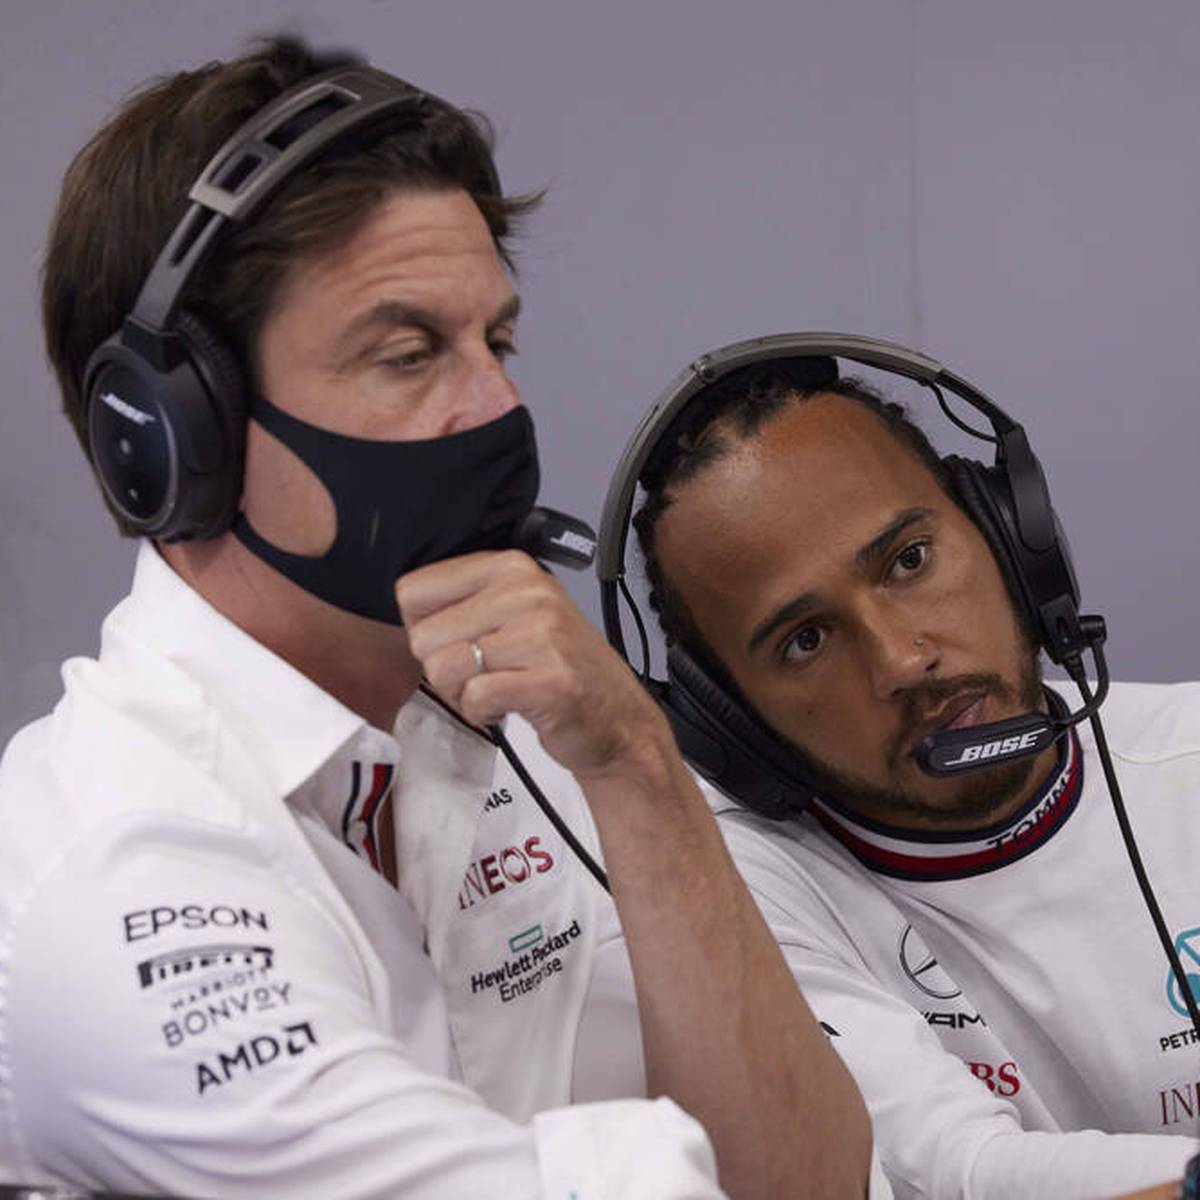 Lewis Hamilton spielt nach dem F1-Finale offenbar sogar mit Rücktrittsgedanken. Mercedes-Boss Toto Wolff findet deutliche Worte. Legende Alain Prost sieht eine reale Gefahr für den Abschied des Rekordweltmeisters.